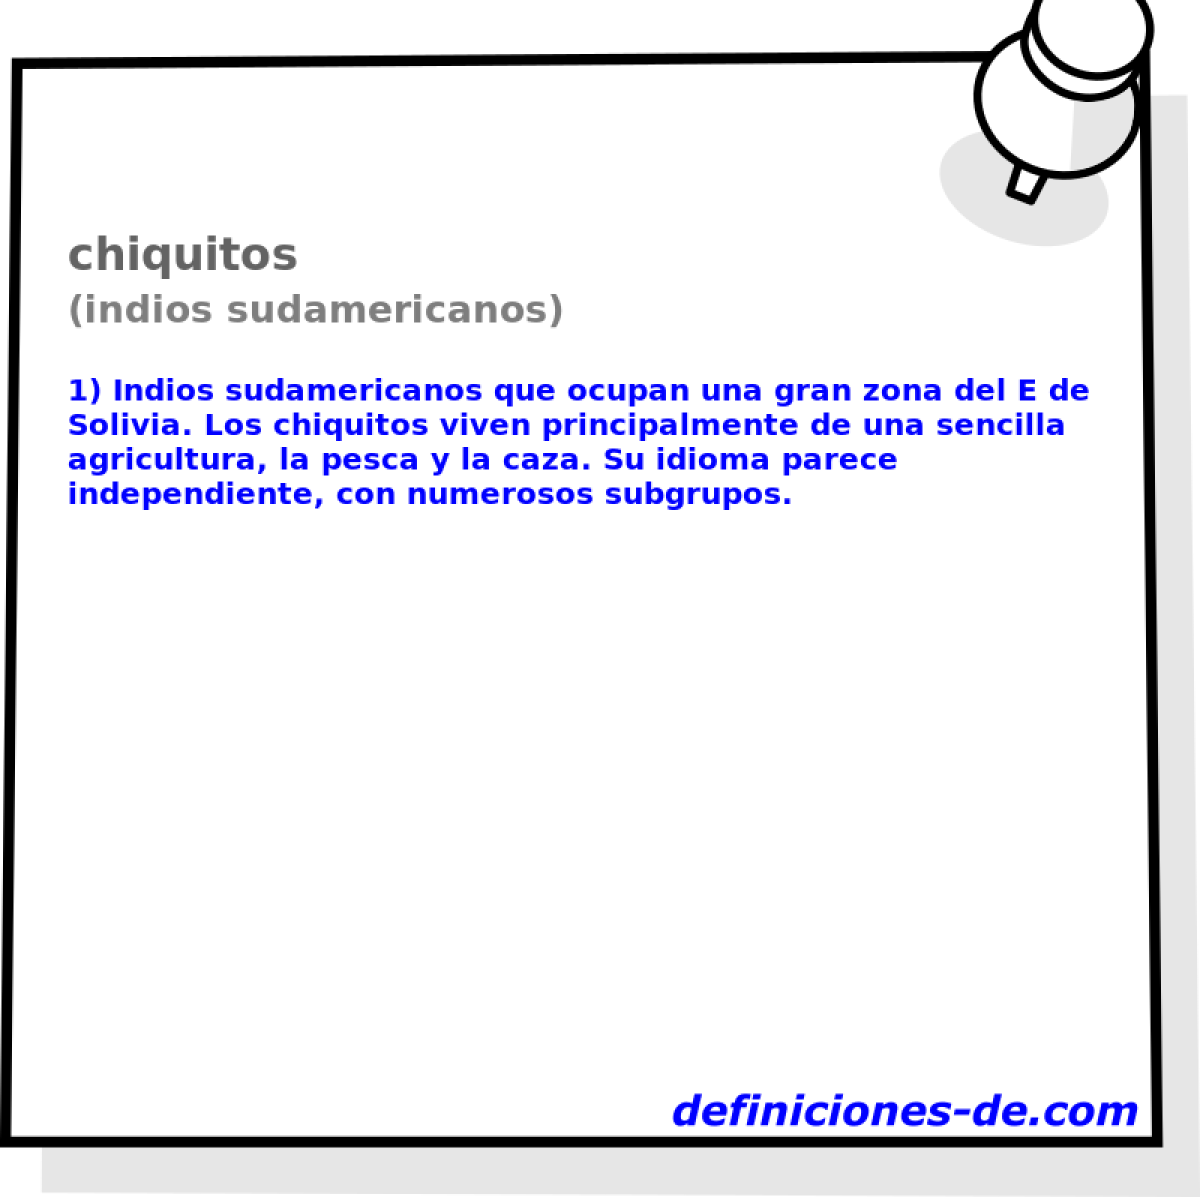 chiquitos (indios sudamericanos)